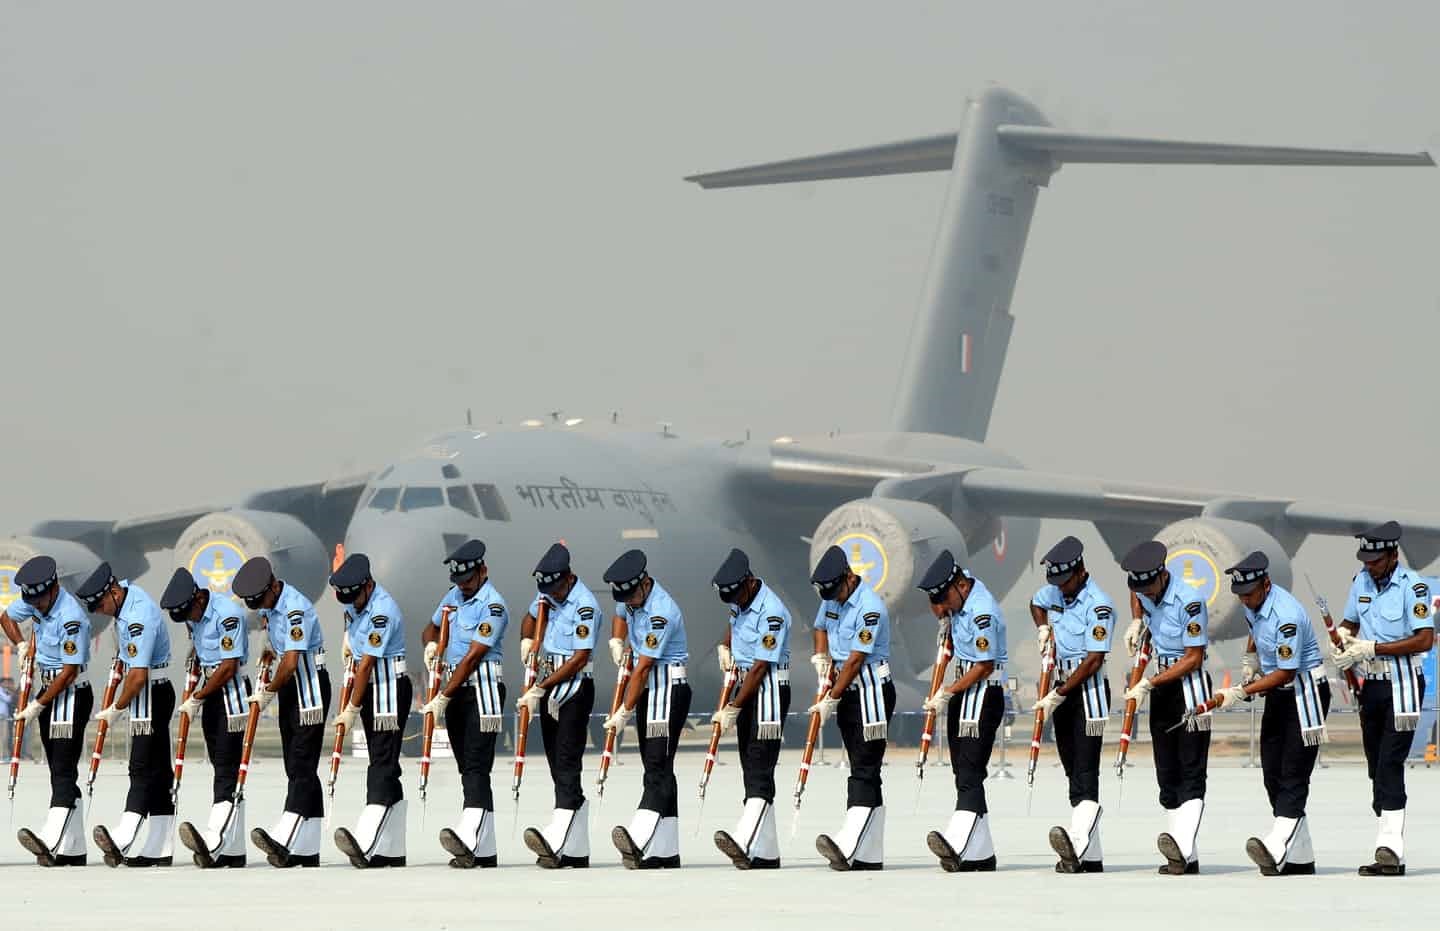 تصاویر | تمرین سربازان هندی برای رژه رفتن در جشن تاسیس نیروی هوایی